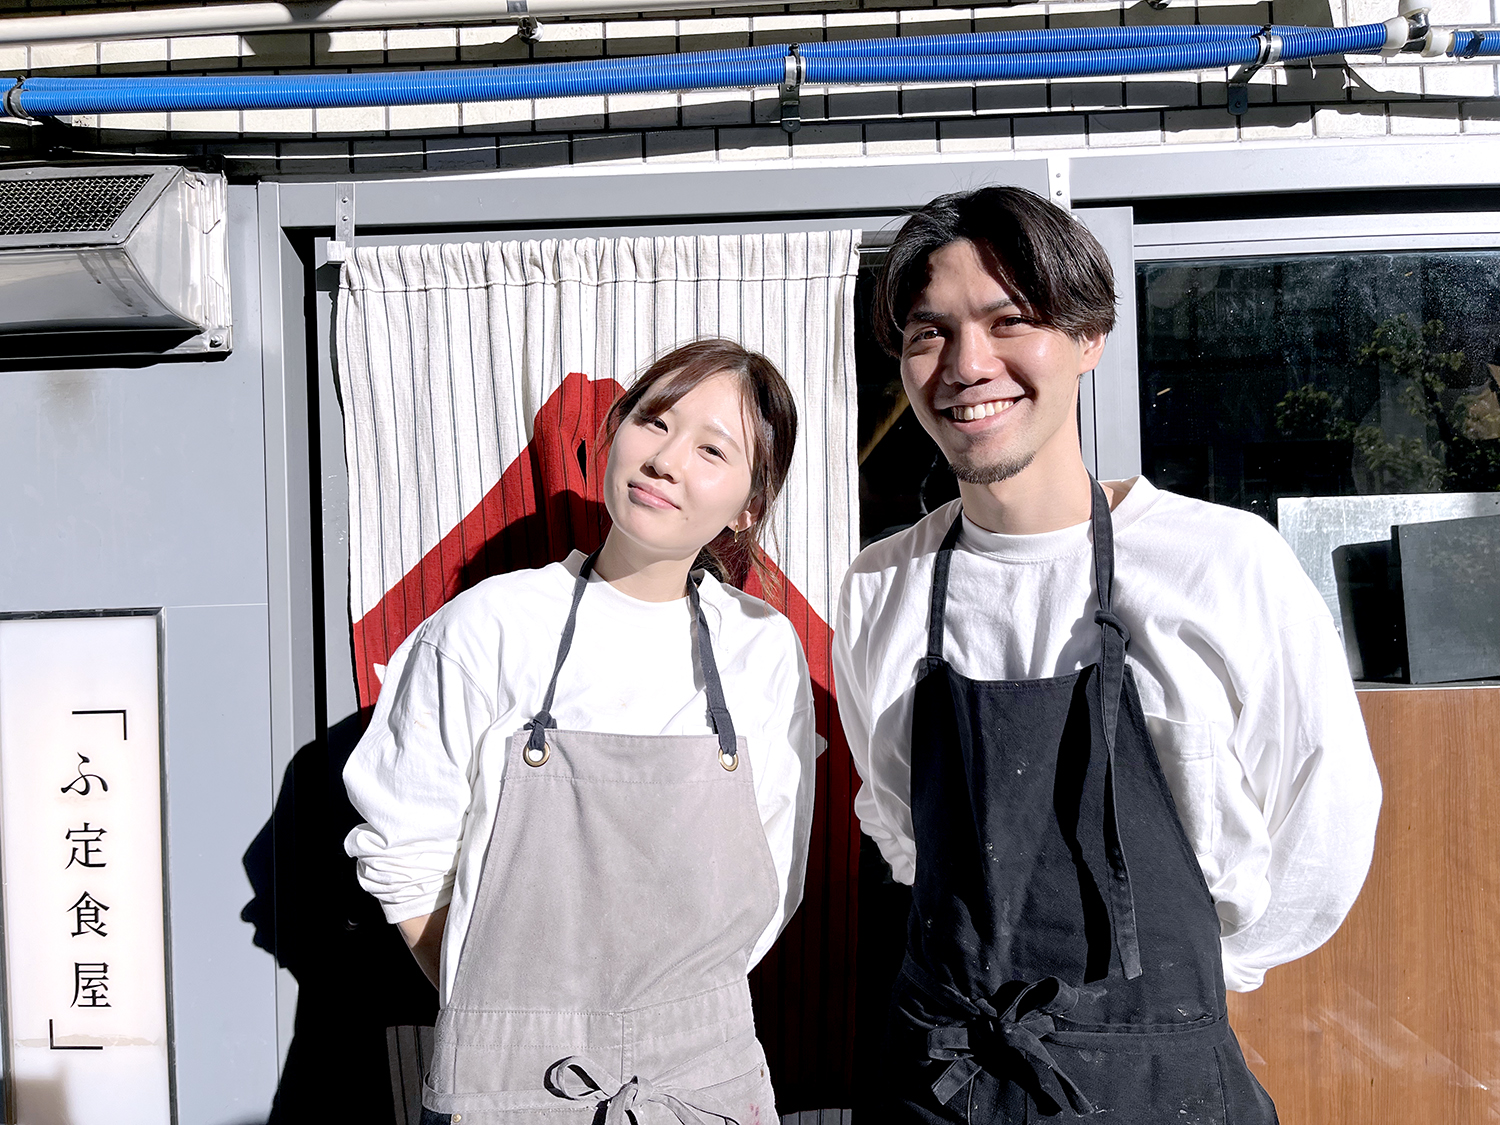 写真右から店長の原田隼太郎さん、料理人の遠藤あすかさん。